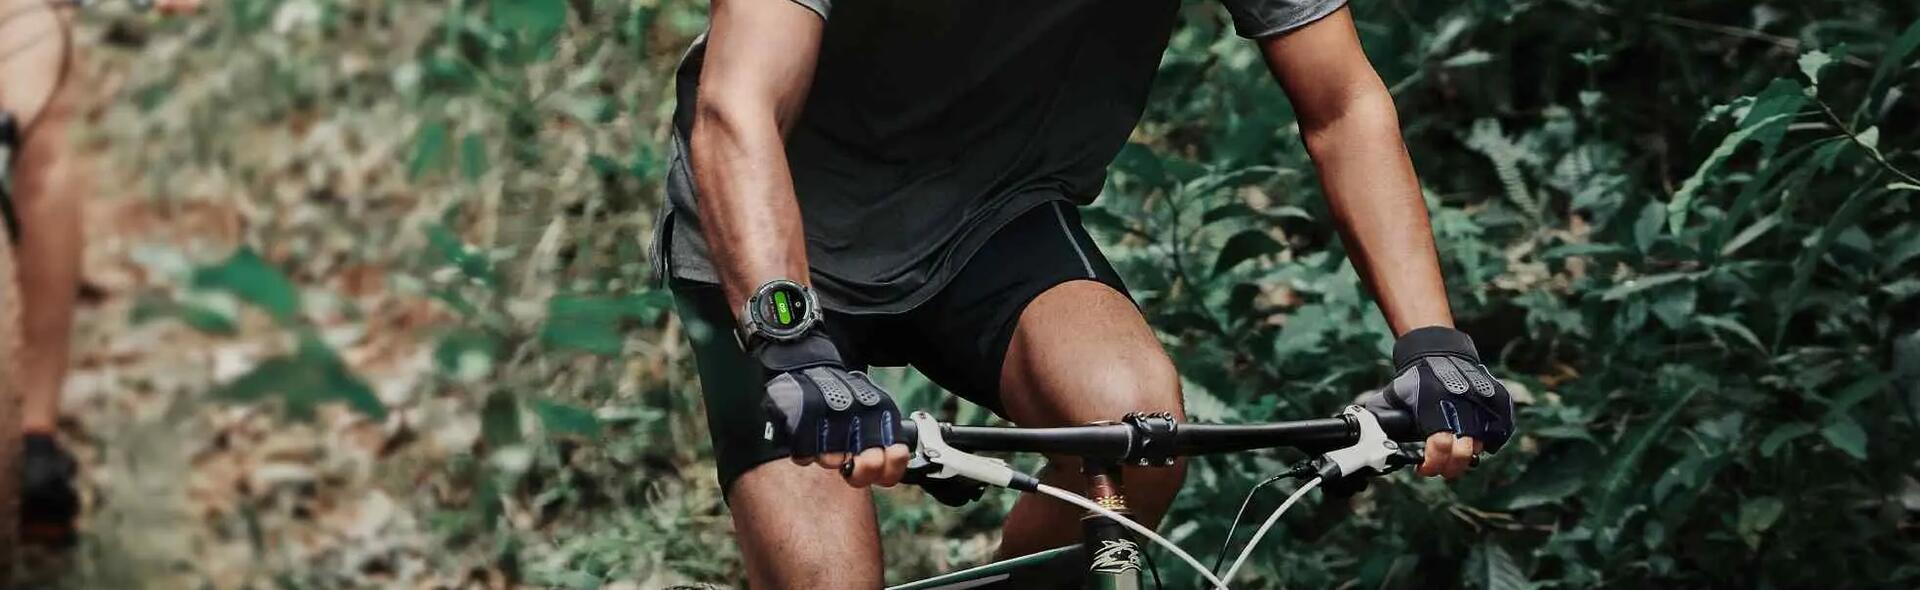 mężczyzna jadący na rowerze w kasku ze smartwatchem na ręce